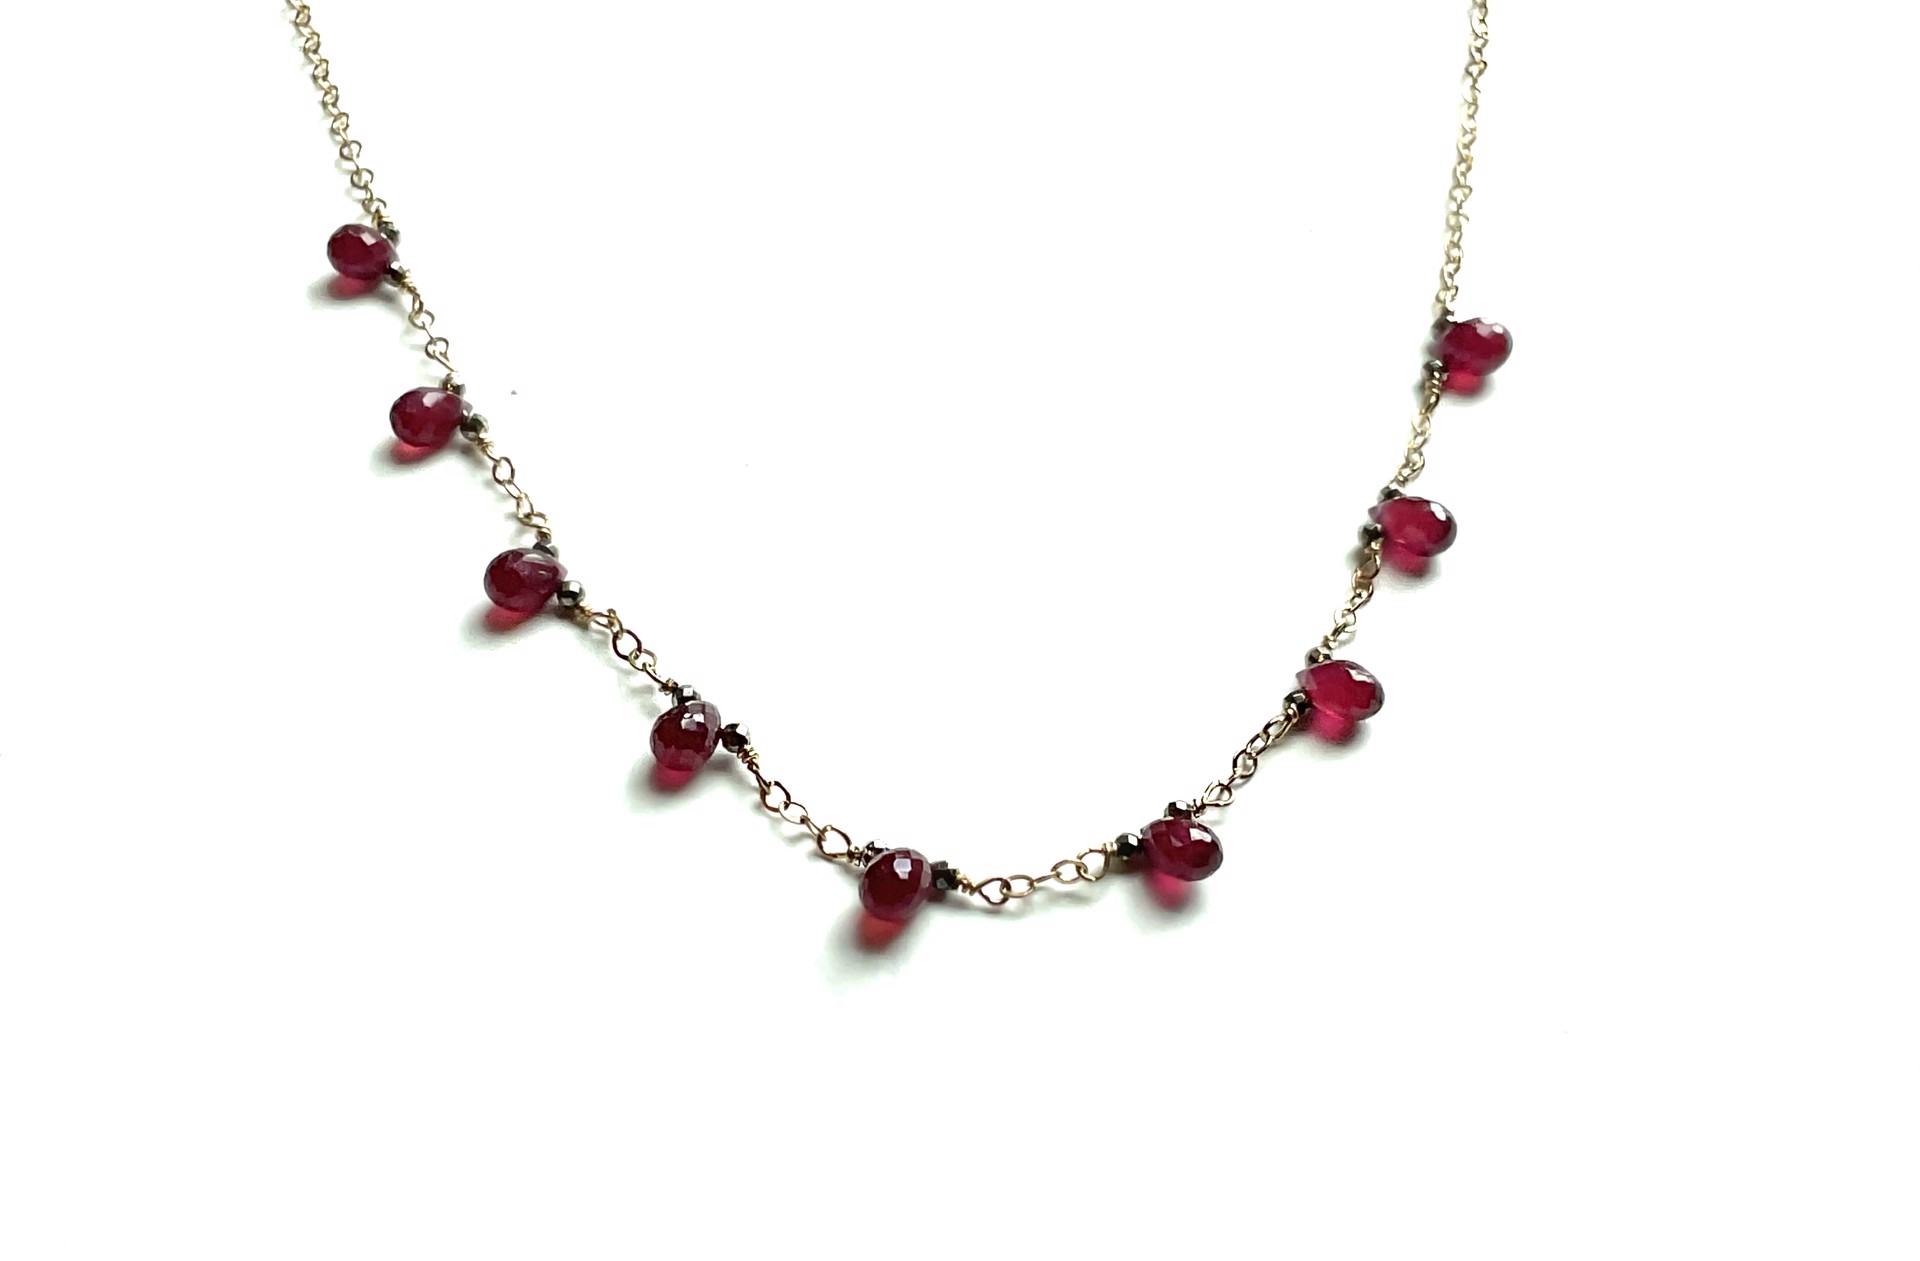 MLJA8513N Ruby Bios with Pyrite Necklace by Melinda Lawton Jewelry